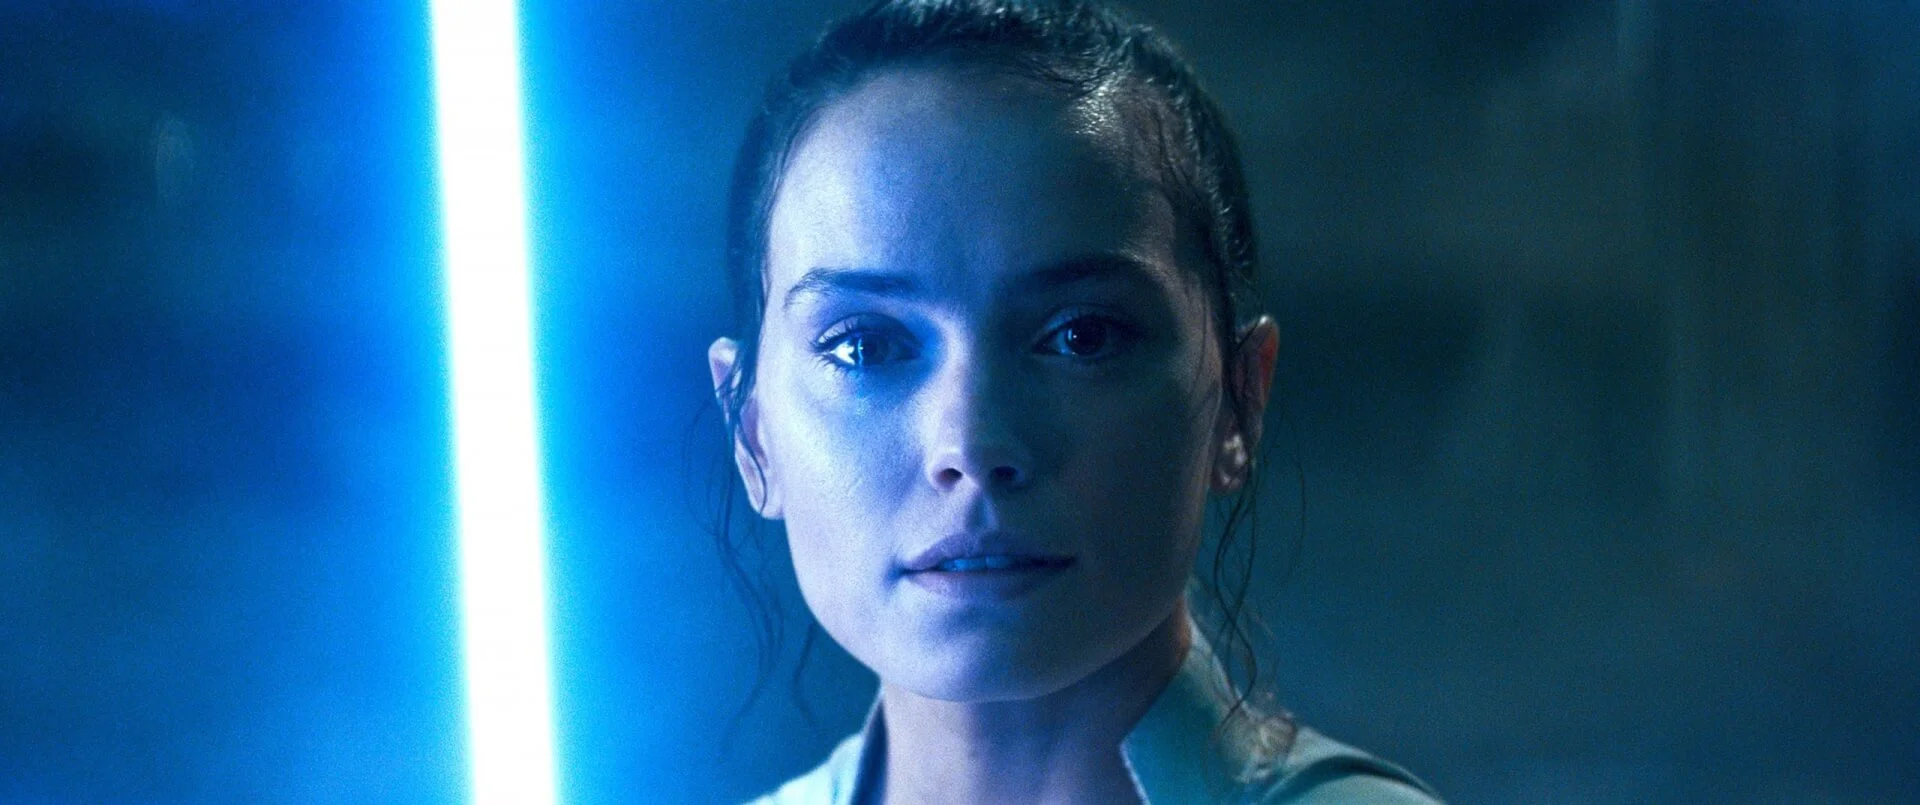 Rey várhatóan mellékszereplője lesz a közelgő Star Wars-filmnek, ami az Új Jedi Rendről fog szólni